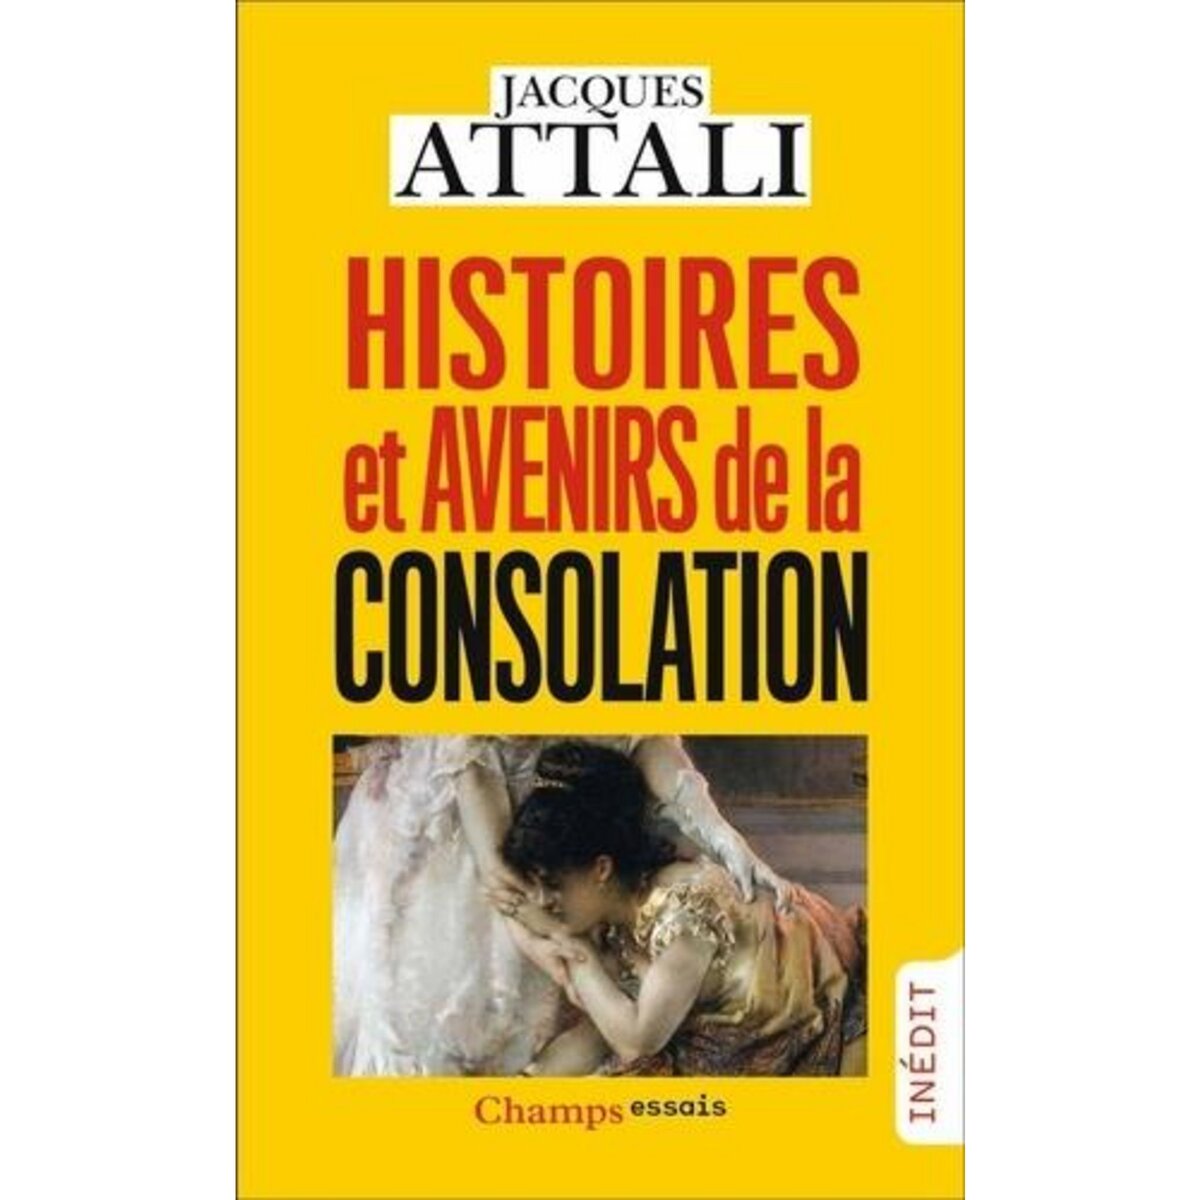  HISTOIRES ET AVENIRS DE LA CONSOLATION, Attali Jacques